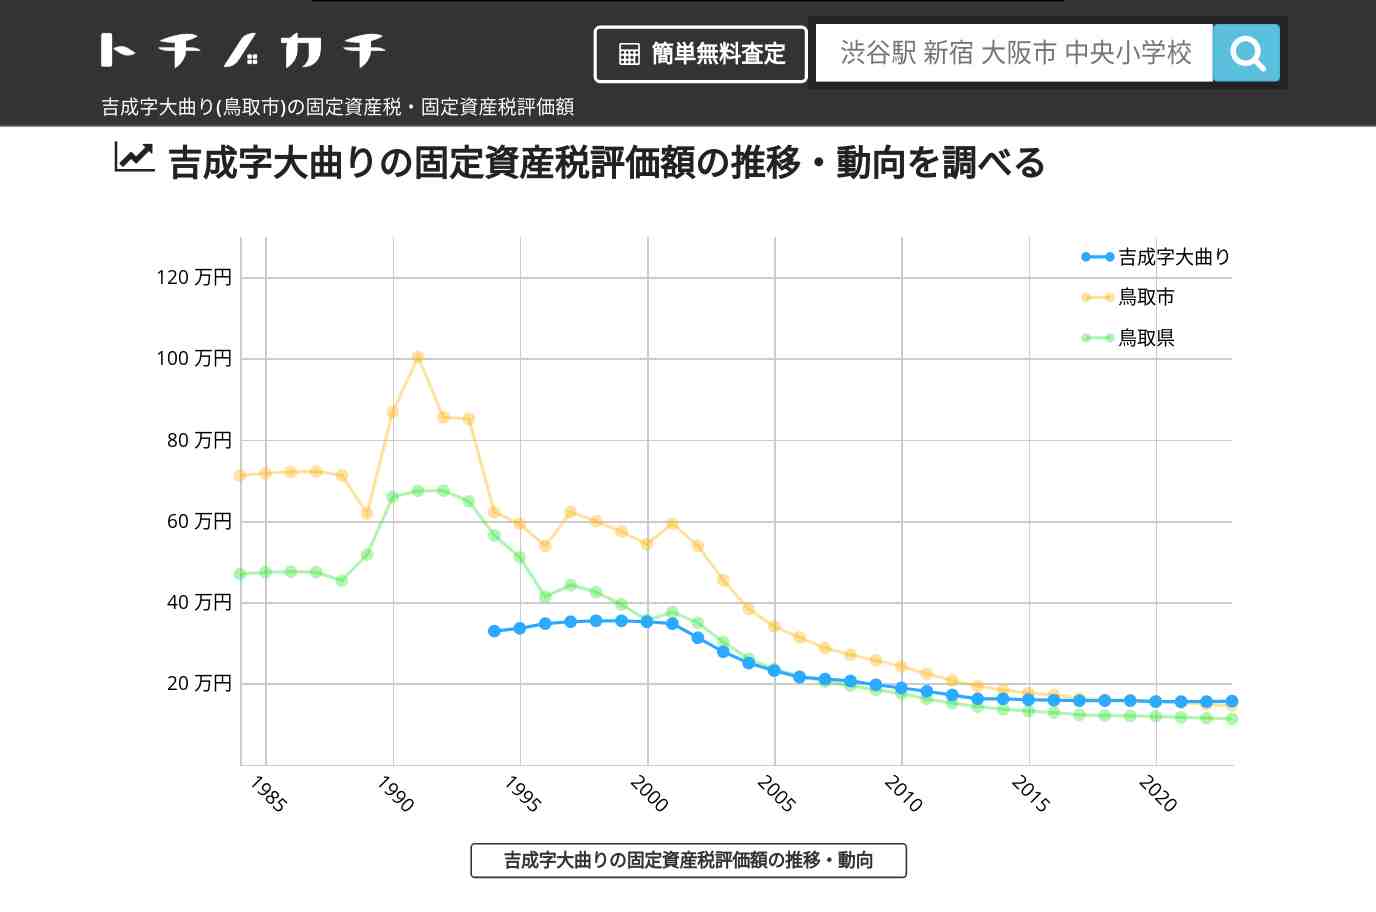 吉成字大曲り(鳥取市)の固定資産税・固定資産税評価額 | トチノカチ